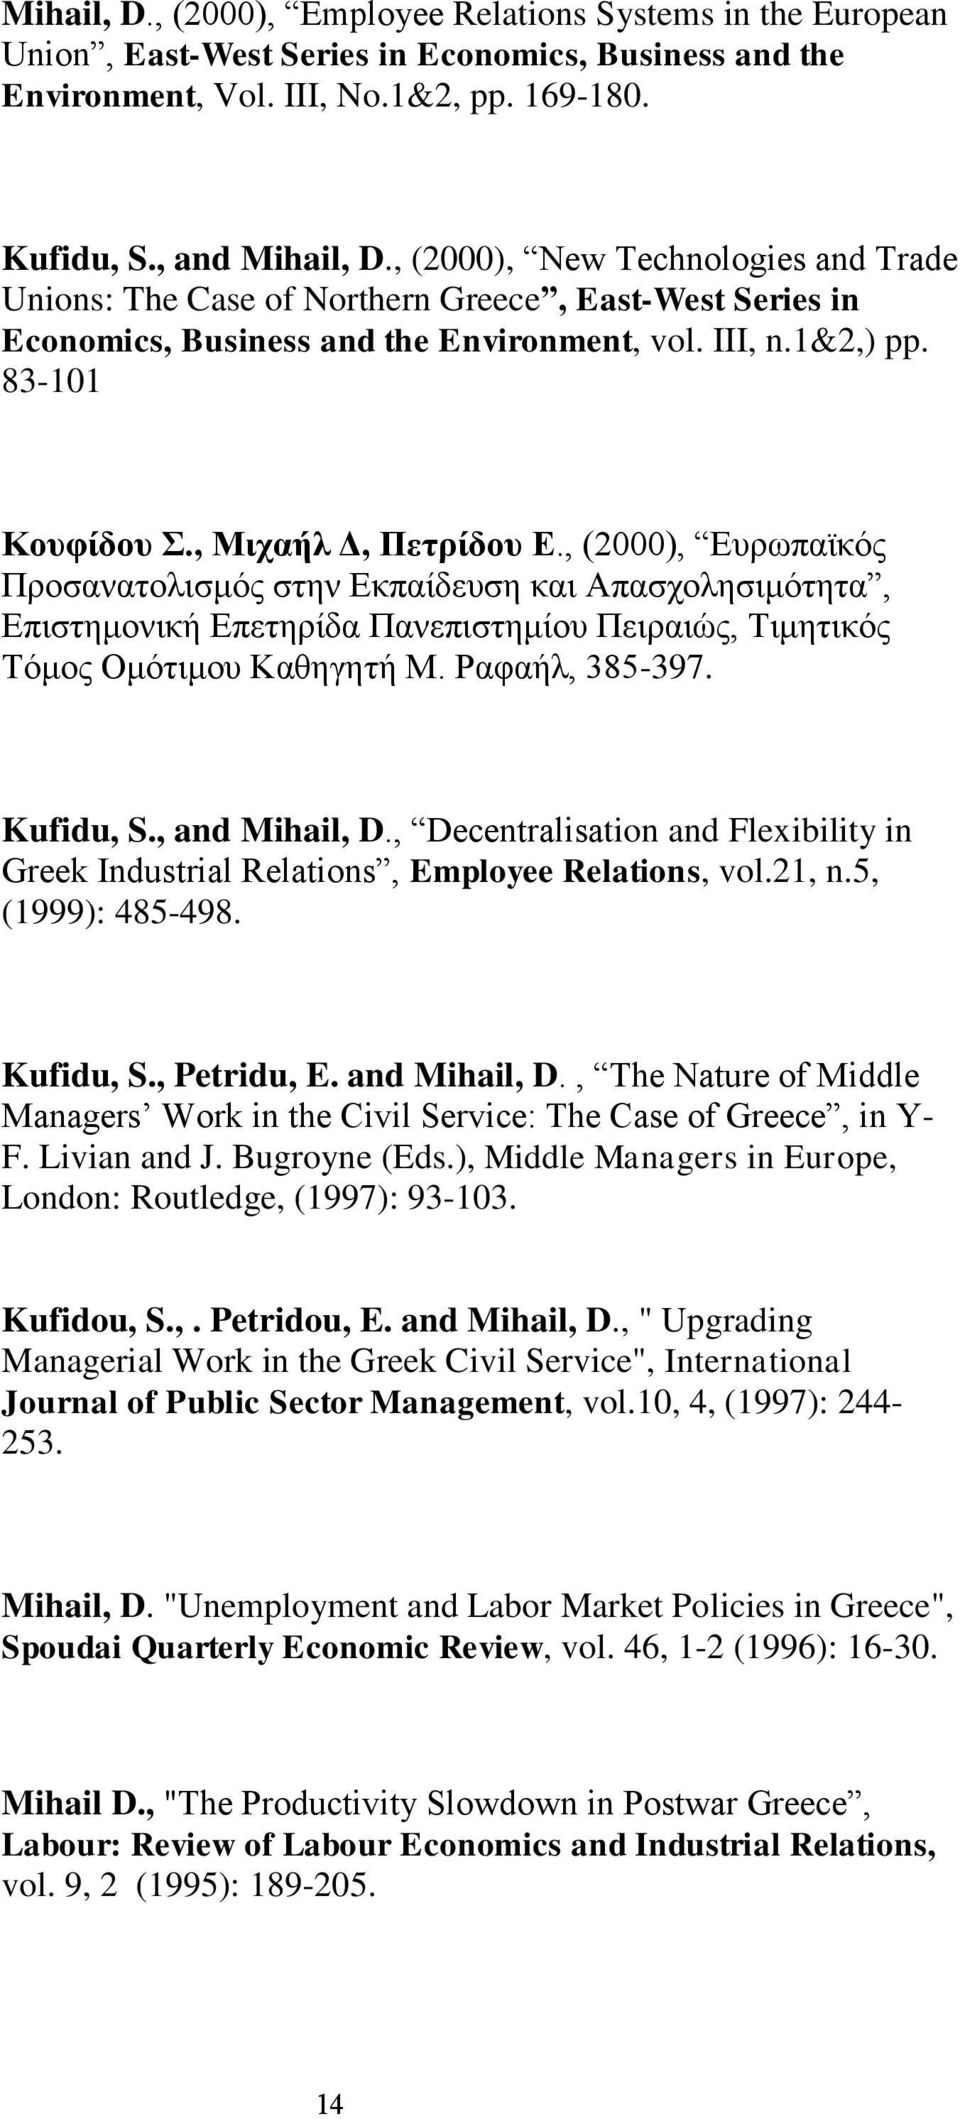 , (2000), Ευρωπαϊκός Προσανατολισμός στην Εκπαίδευση και Απασχολησιμότητα, Επιστημονική Επετηρίδα Πανεπιστημίου Πειραιώς, Τιμητικός Τόμος Ομότιμου Καθηγητή Μ. Ραφαήλ, 385-397. Kufidu, S.